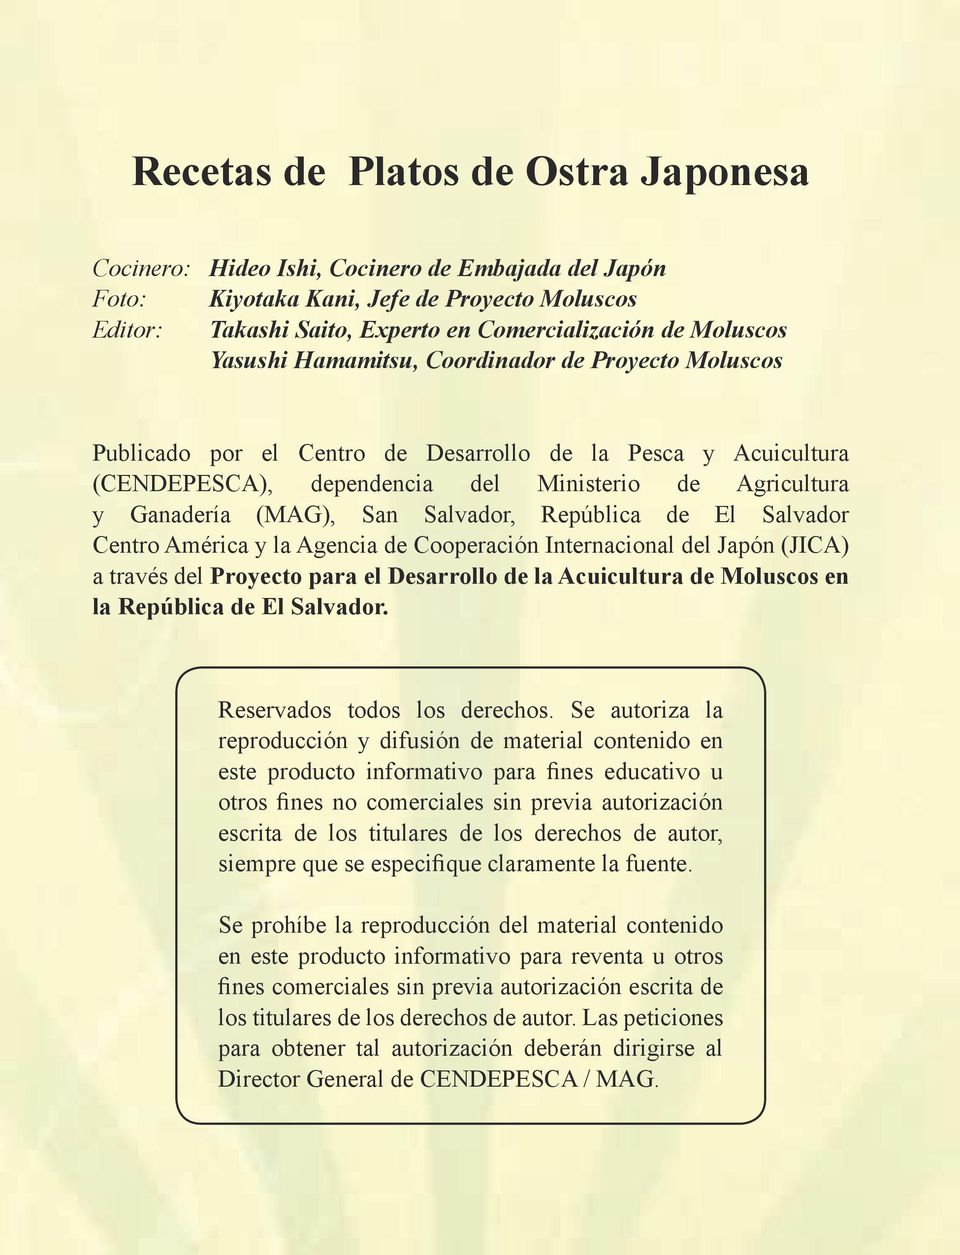 Salvador, República de El Salvador Centro América y la Agencia de Cooperación Internacional del Japón (JICA) a través del Proyecto para el Desarrollo de la Acuicultura de Moluscos en la República de